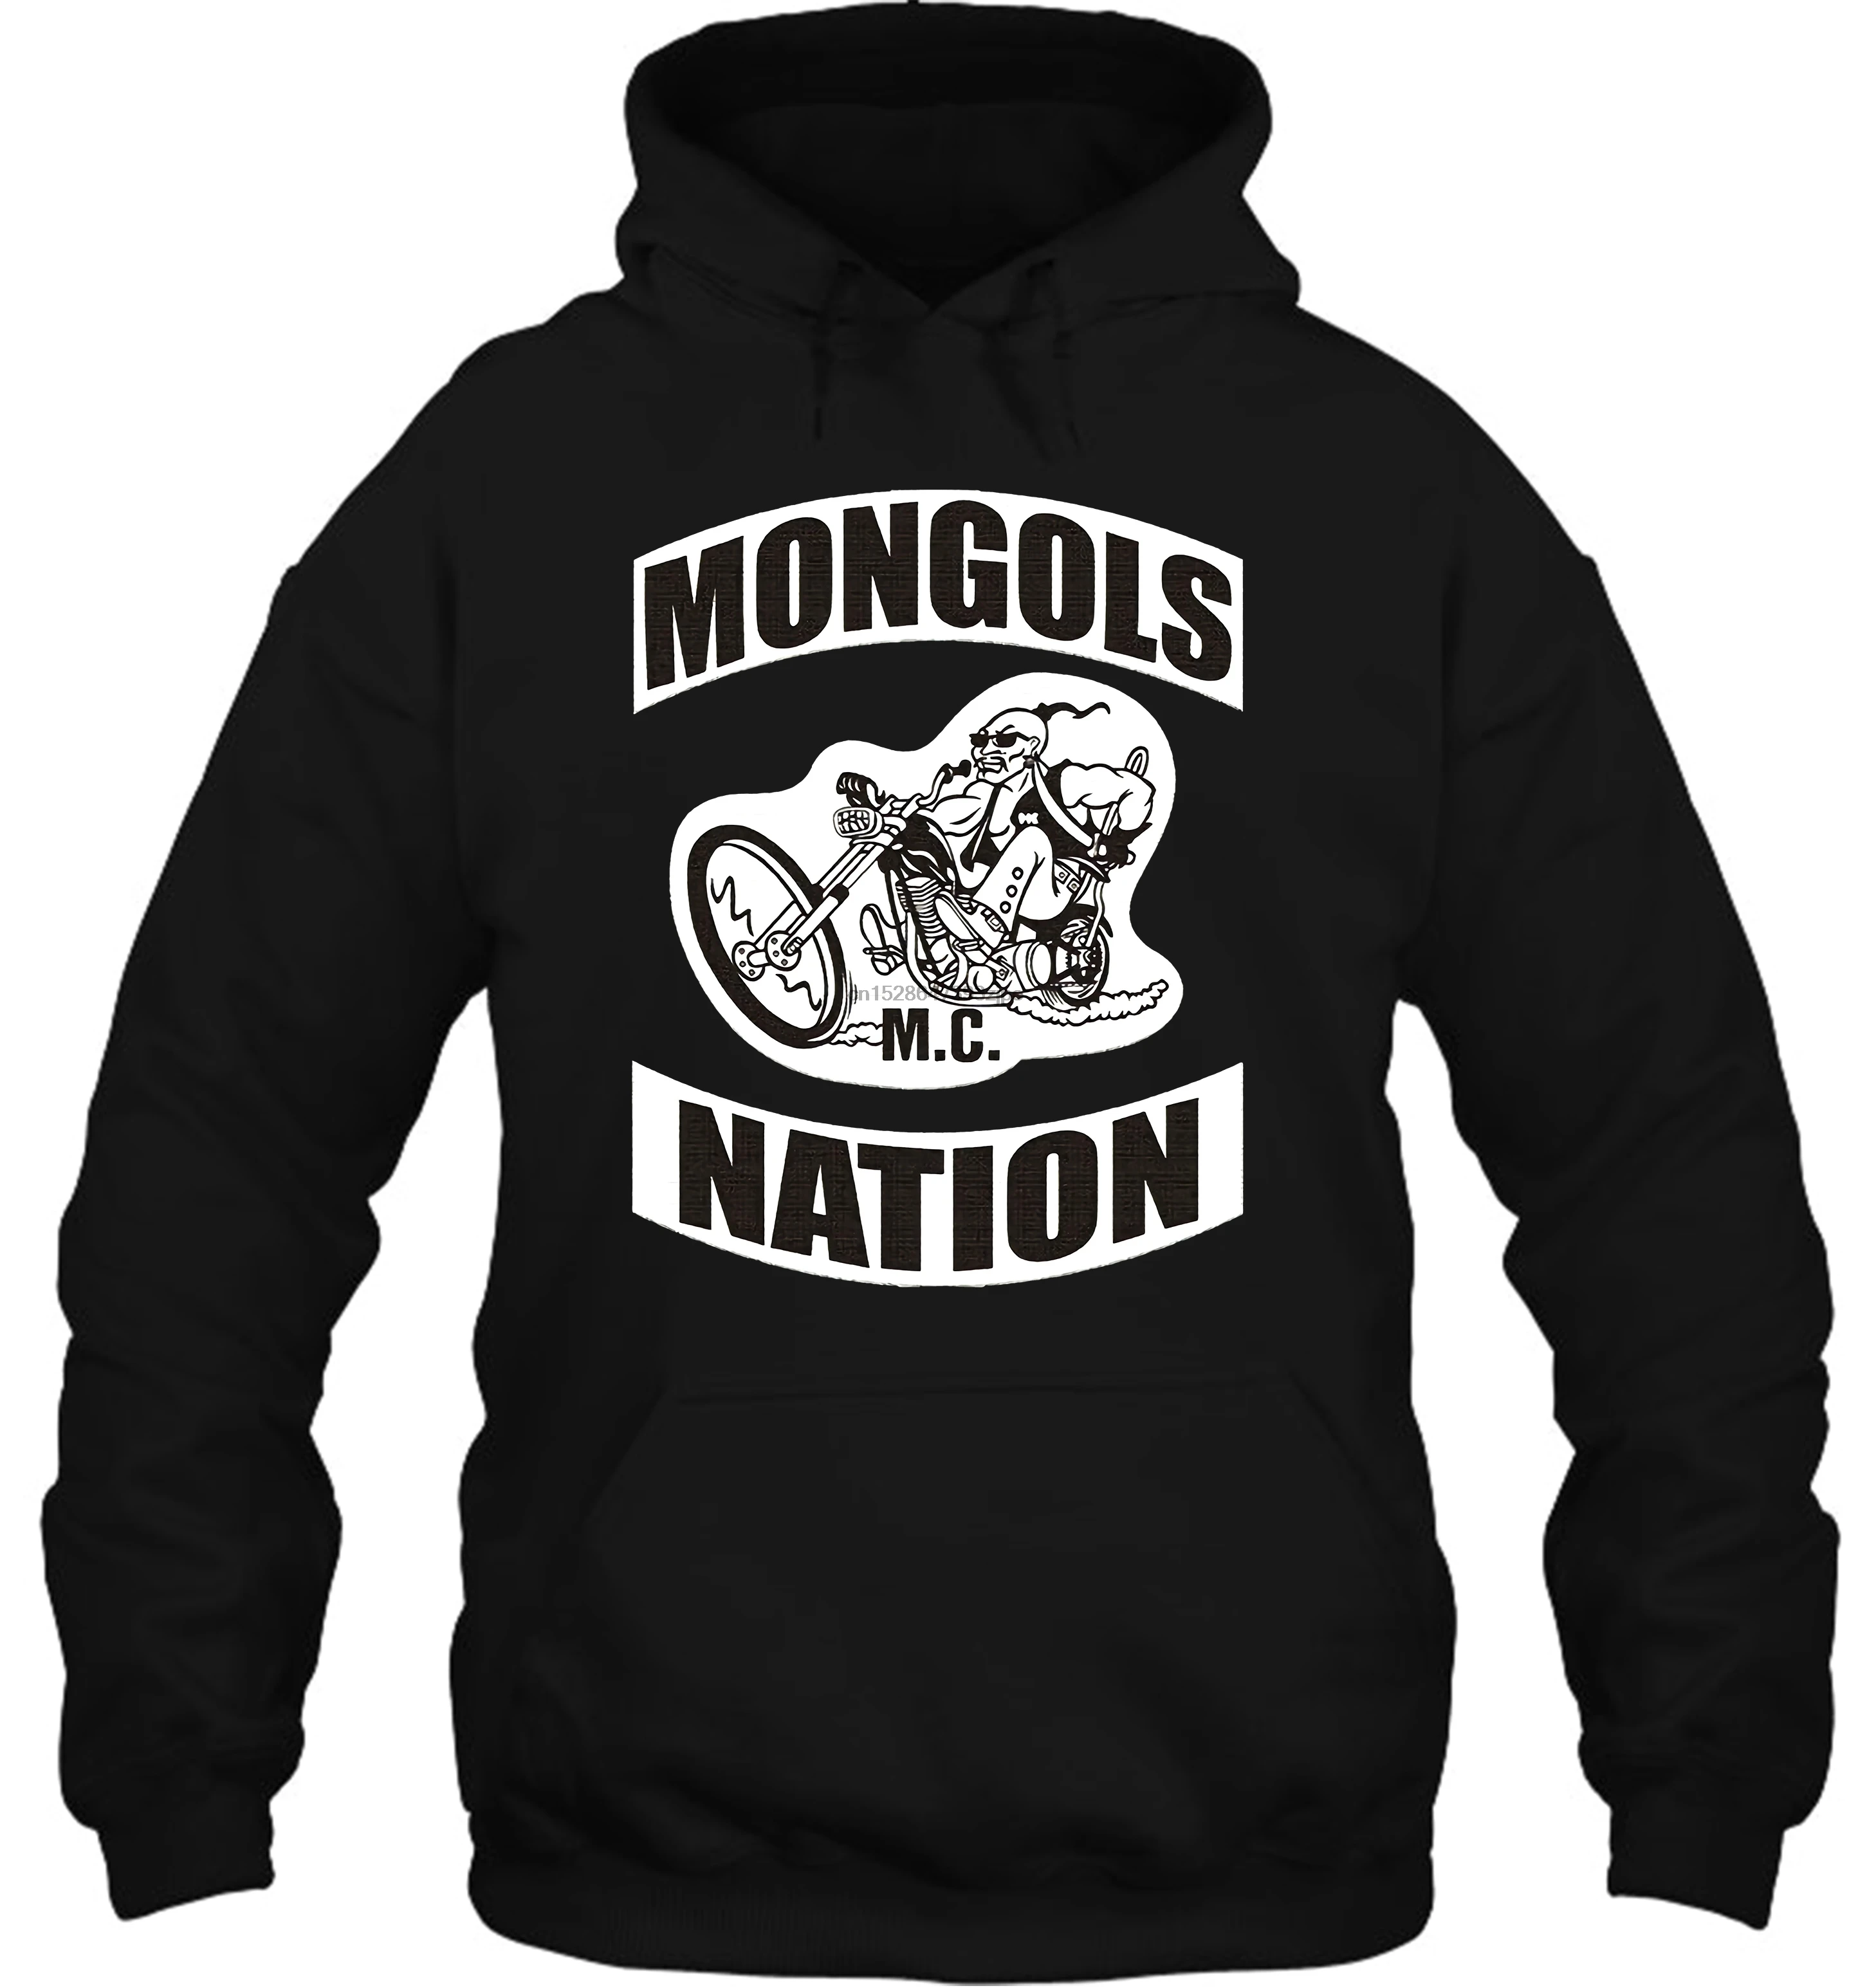 Мужская толстовка Mongols Mc с нашивками графическим принтом повседневная черная